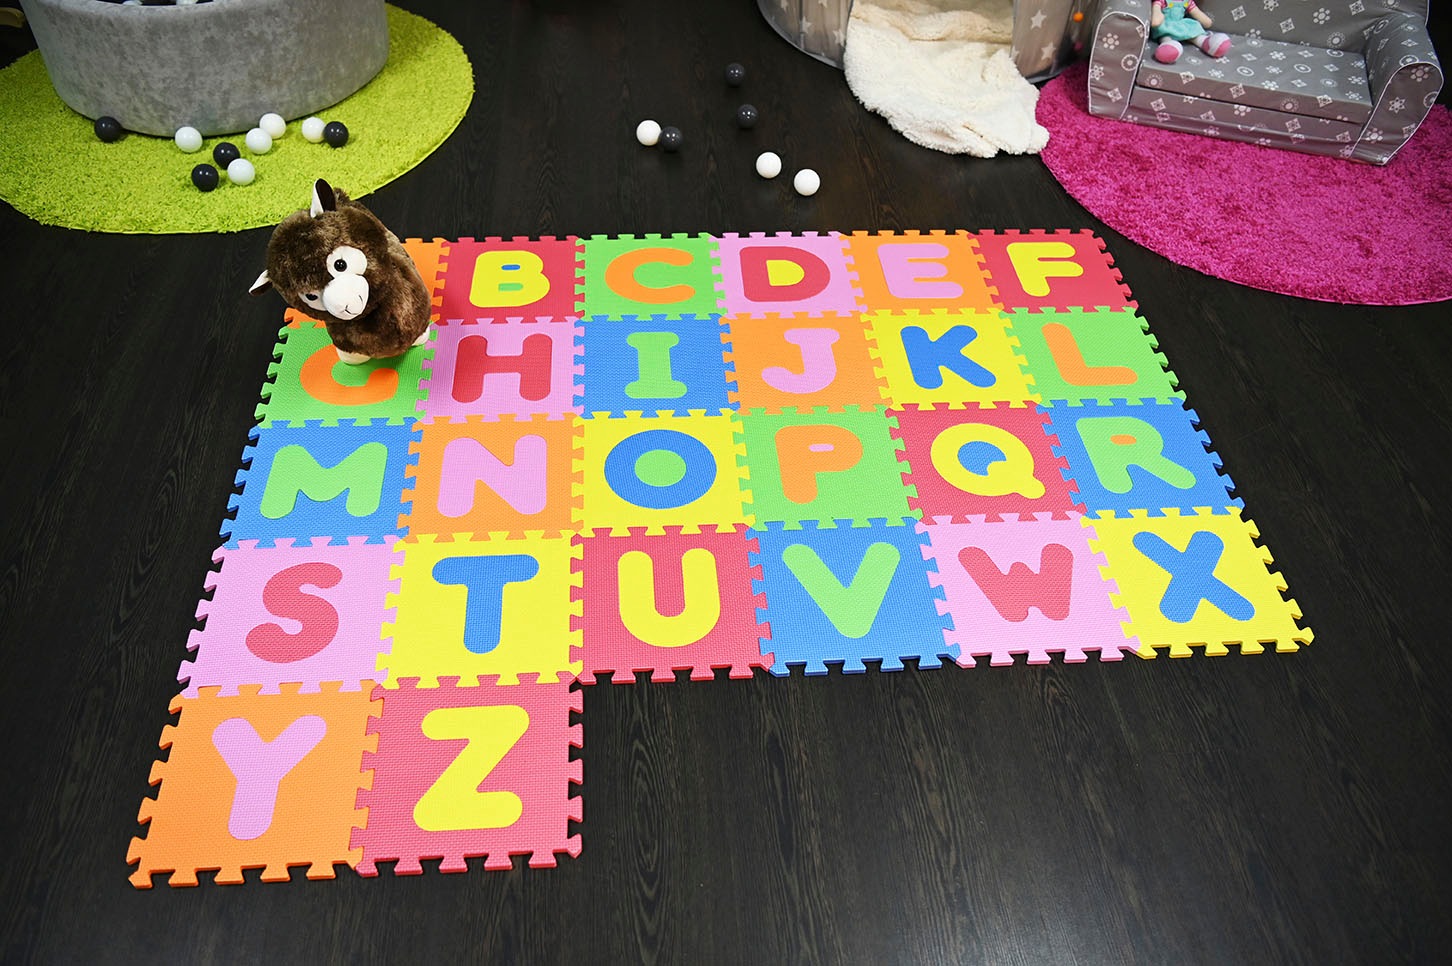 Knorrtoys® Puzzle »Alphabet«, Puzzlematte, Bodenpuzzle